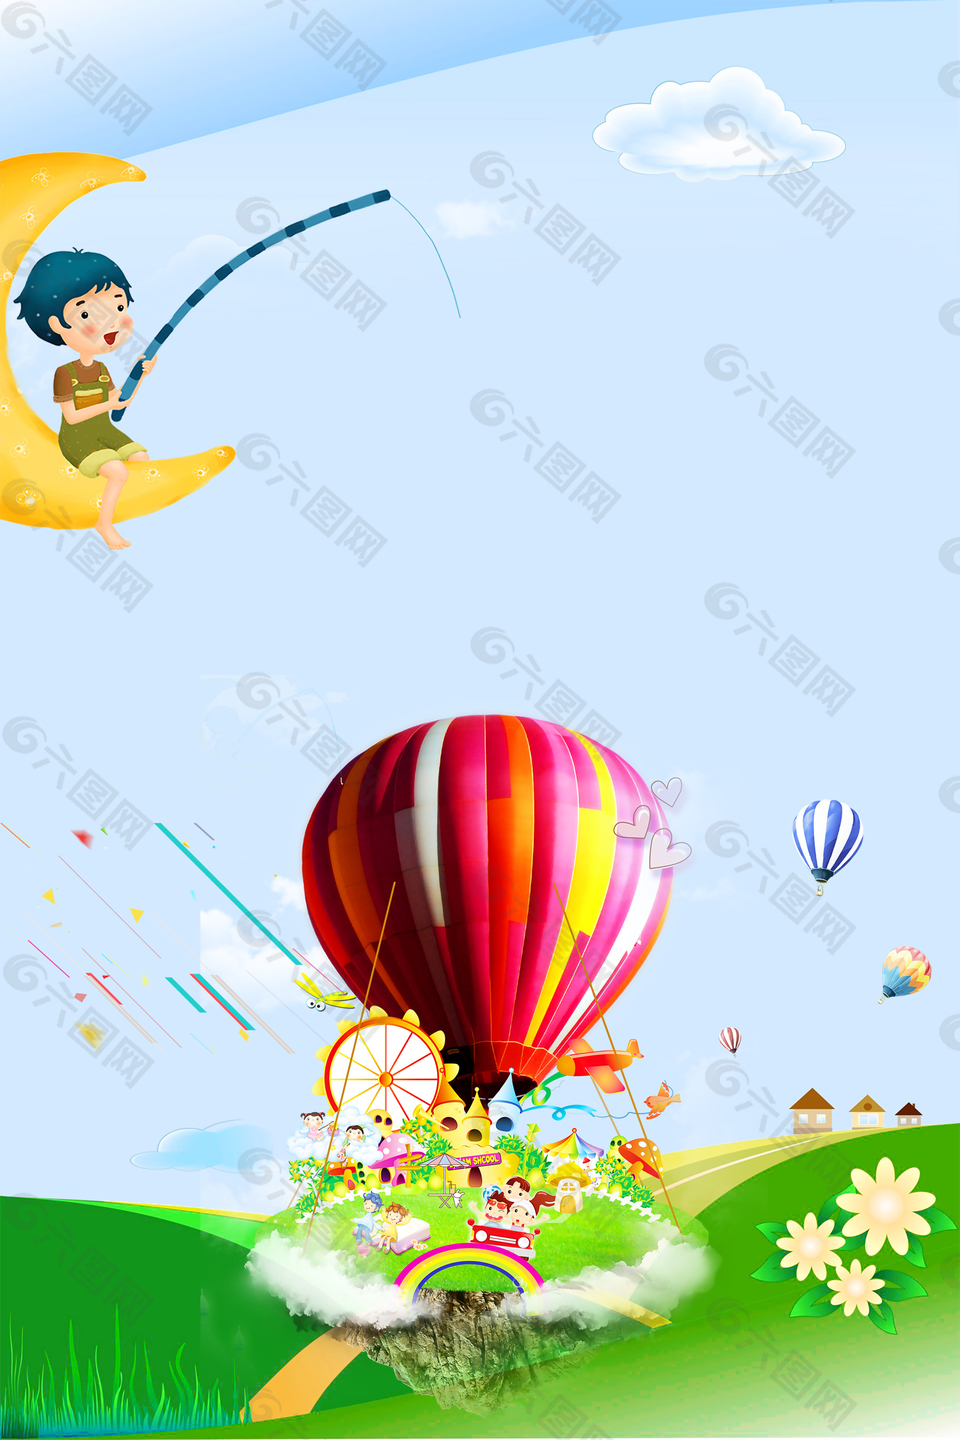 蓝天白云风景气球绿色草地卡通背景素材